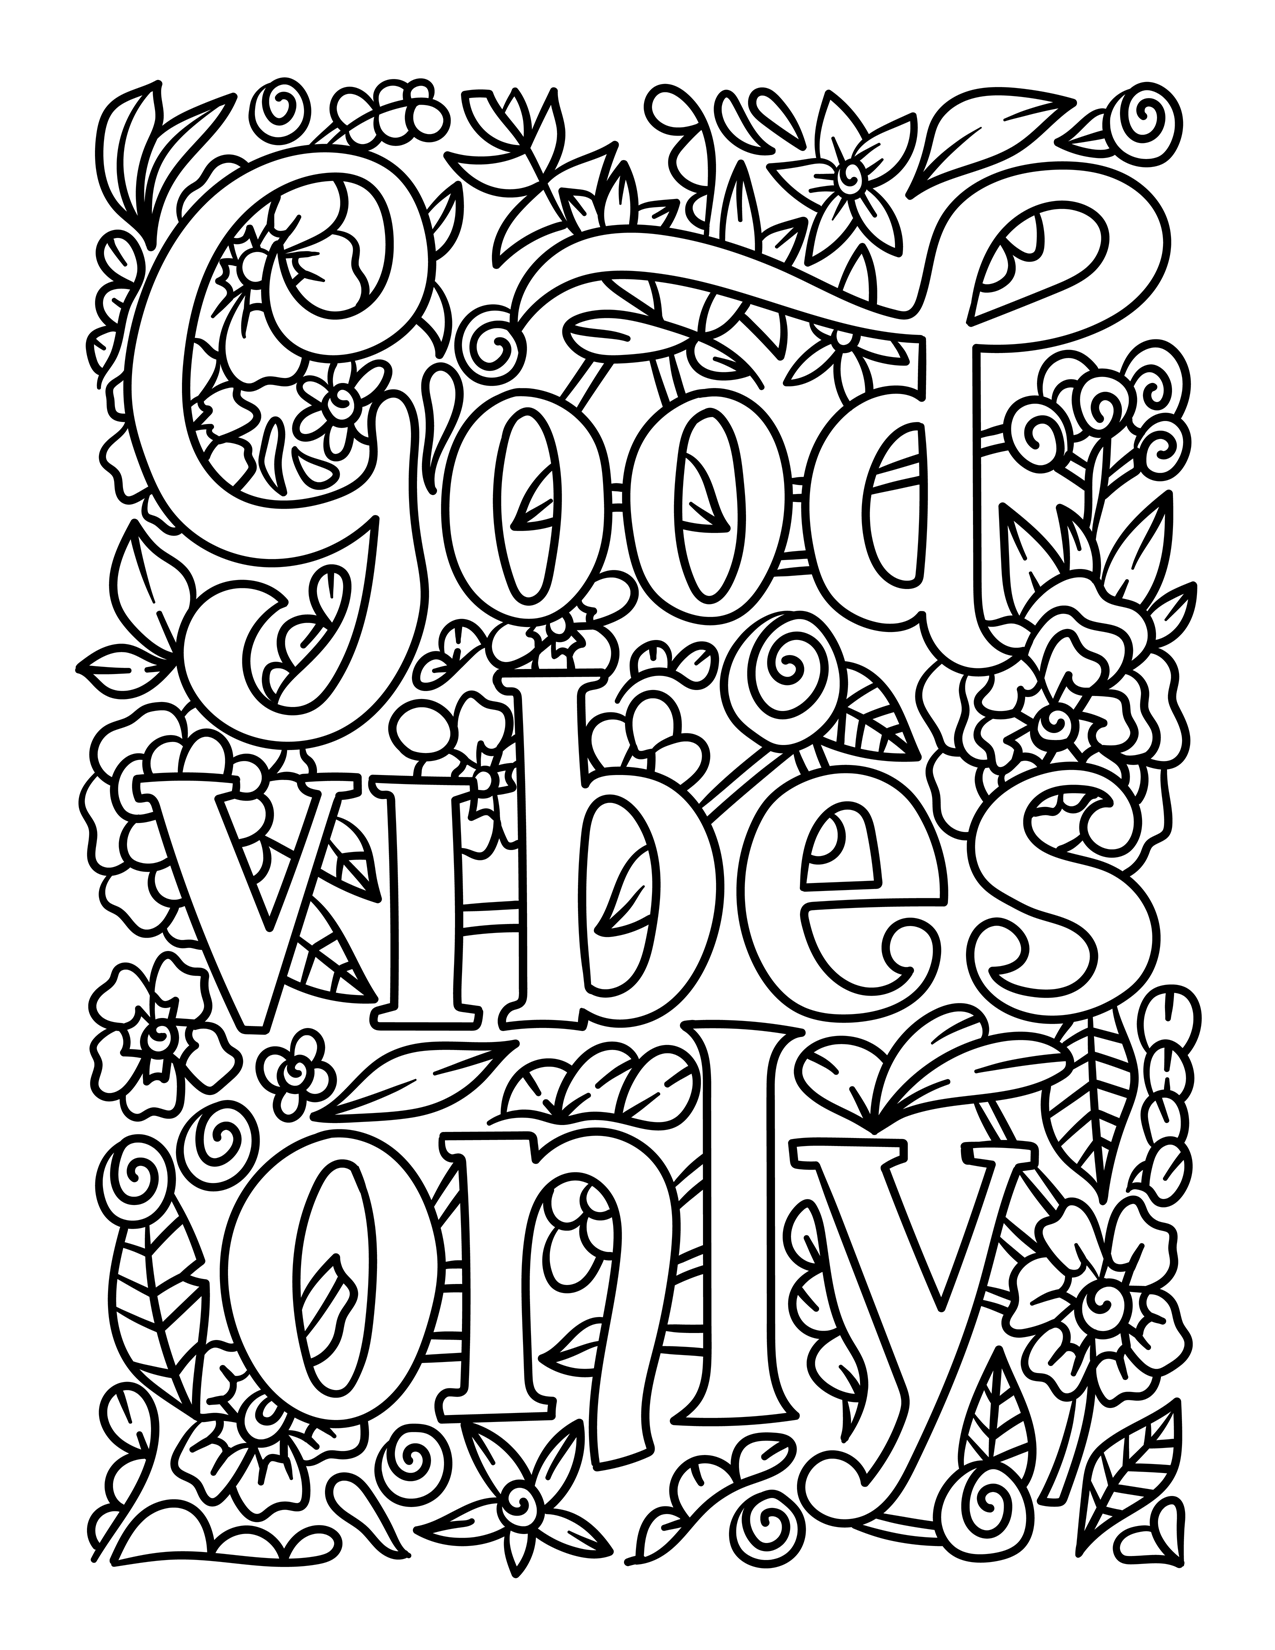 Good Vibes Only - SJPrinter 